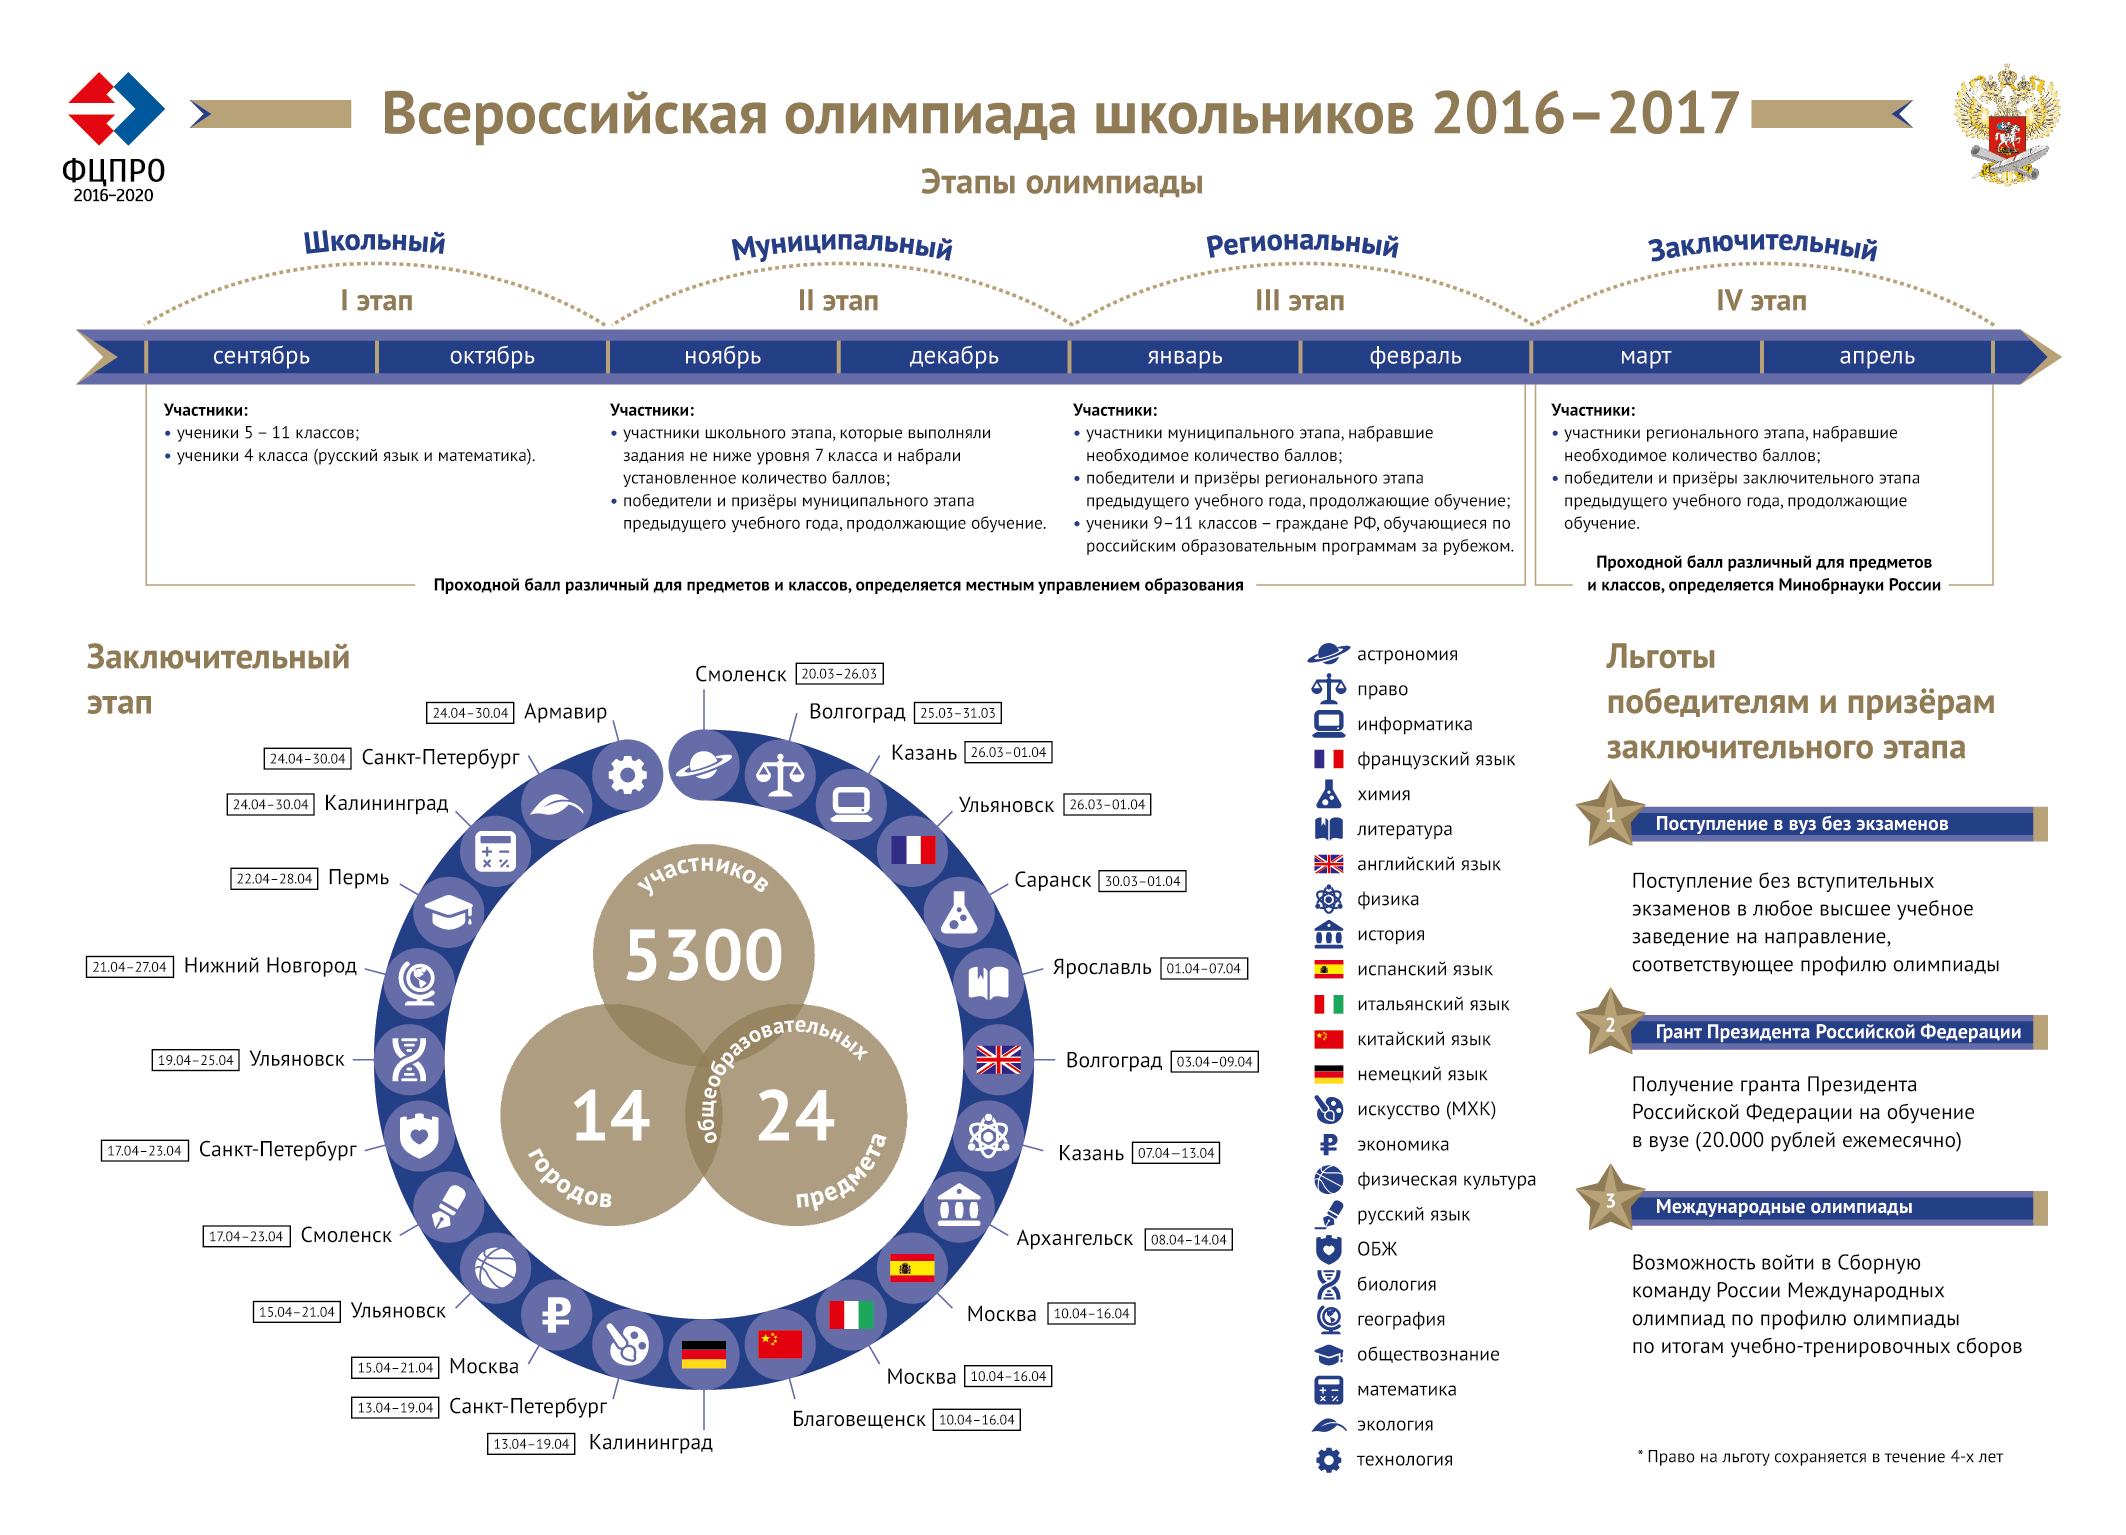 Сколько этапов всероссийской олимпиады школьников